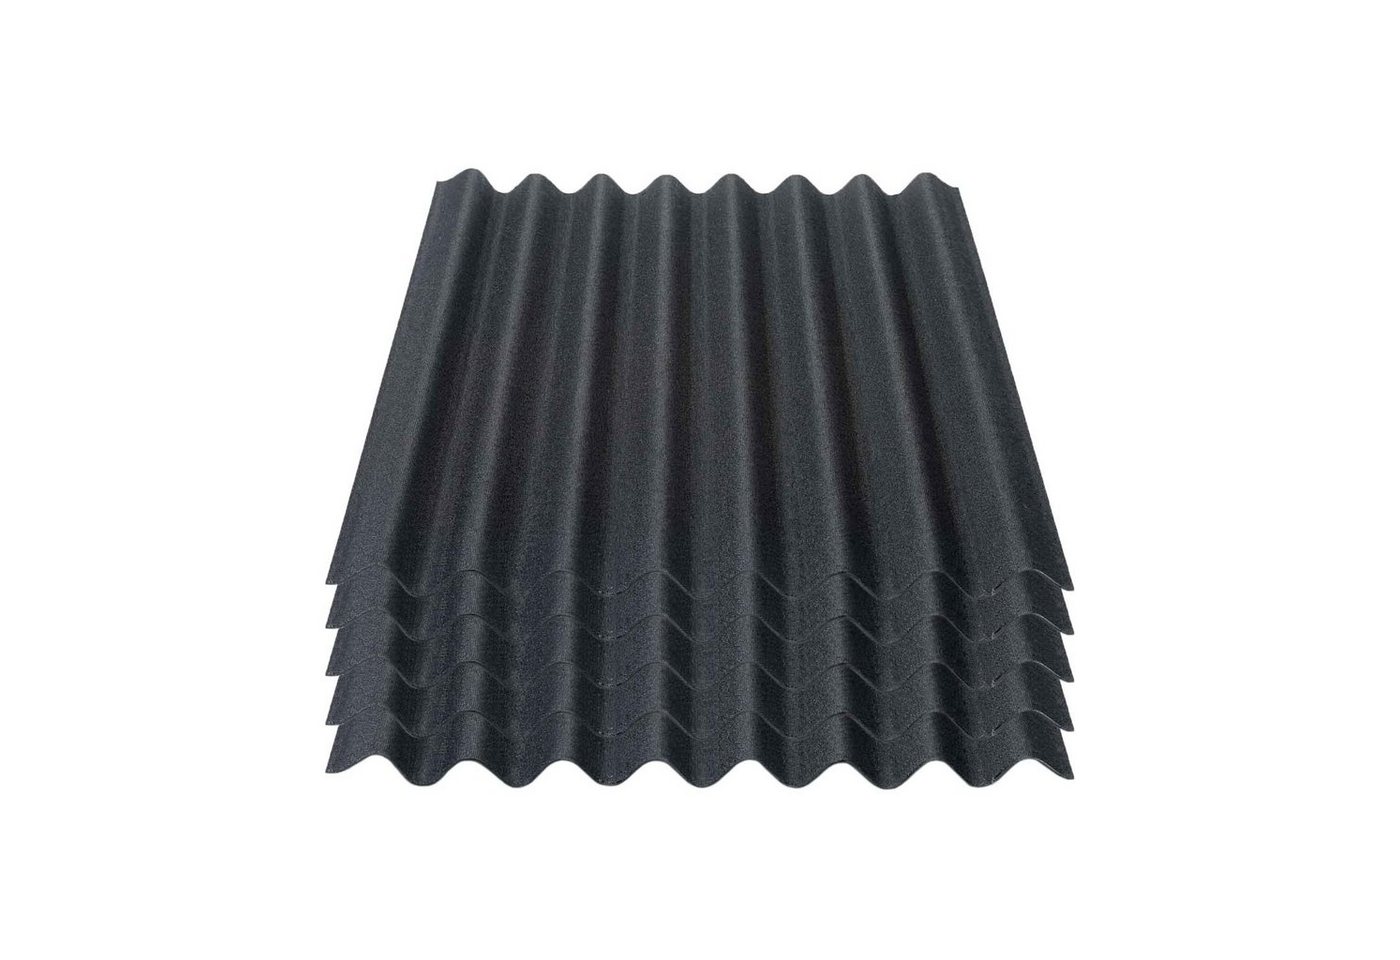 Onduline Dachpappe Onduline Easyline Dachplatte Wandplatte Bitumenwellplatten Wellplatte 5x0,76m² - schwarz, wellig, 3.8 m² pro Paket, (5-St) von Onduline